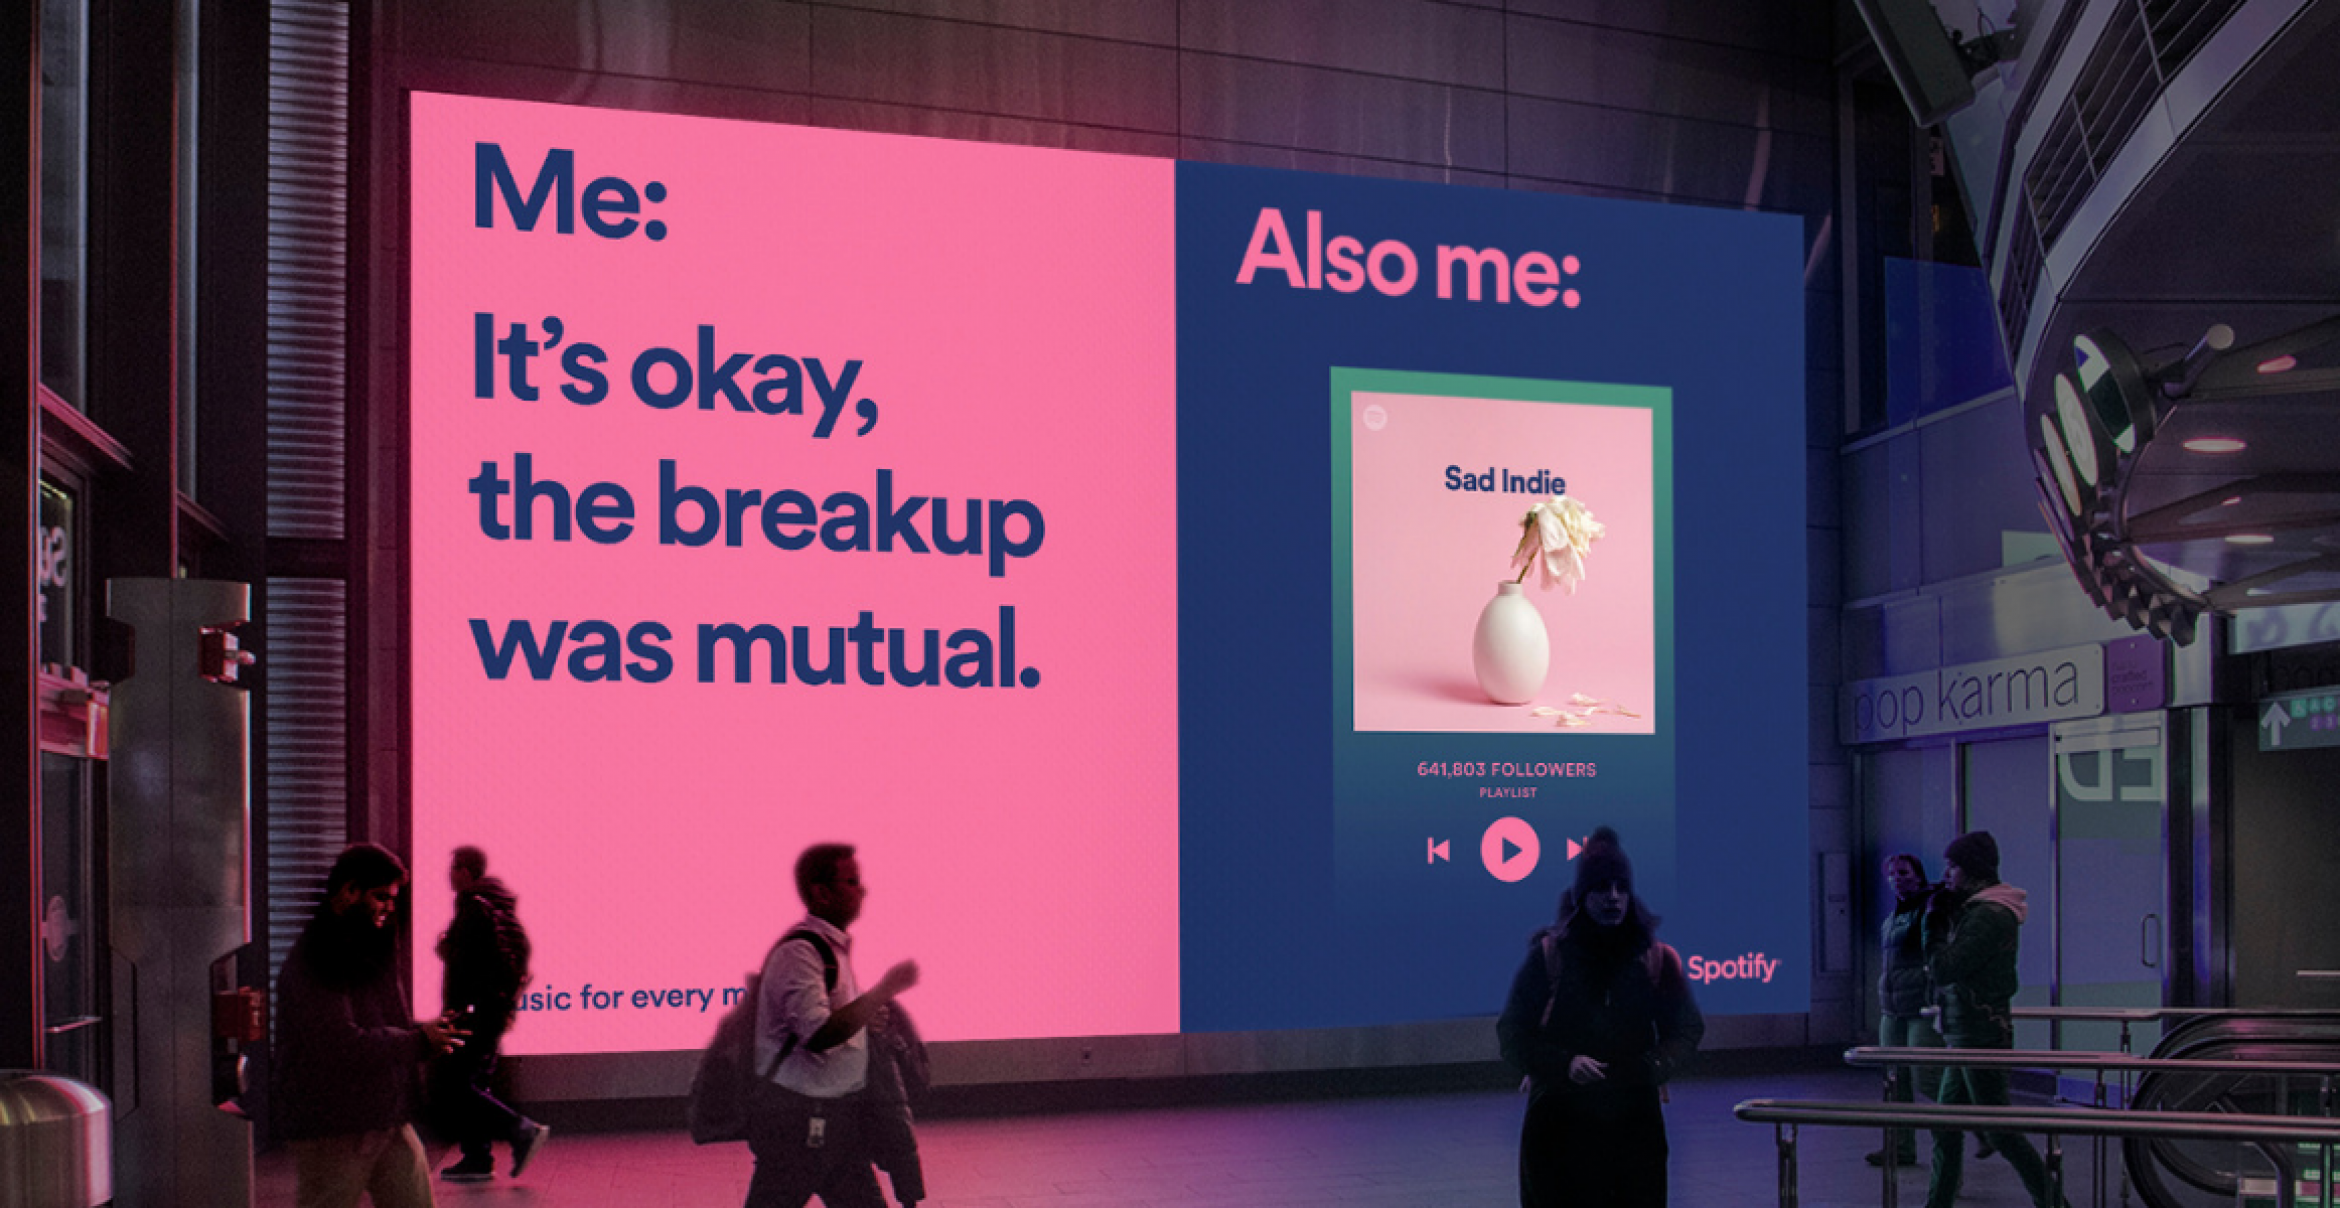 Diese Plakate von Spotify zeigen: Die Plattform hat Meme-Charakter